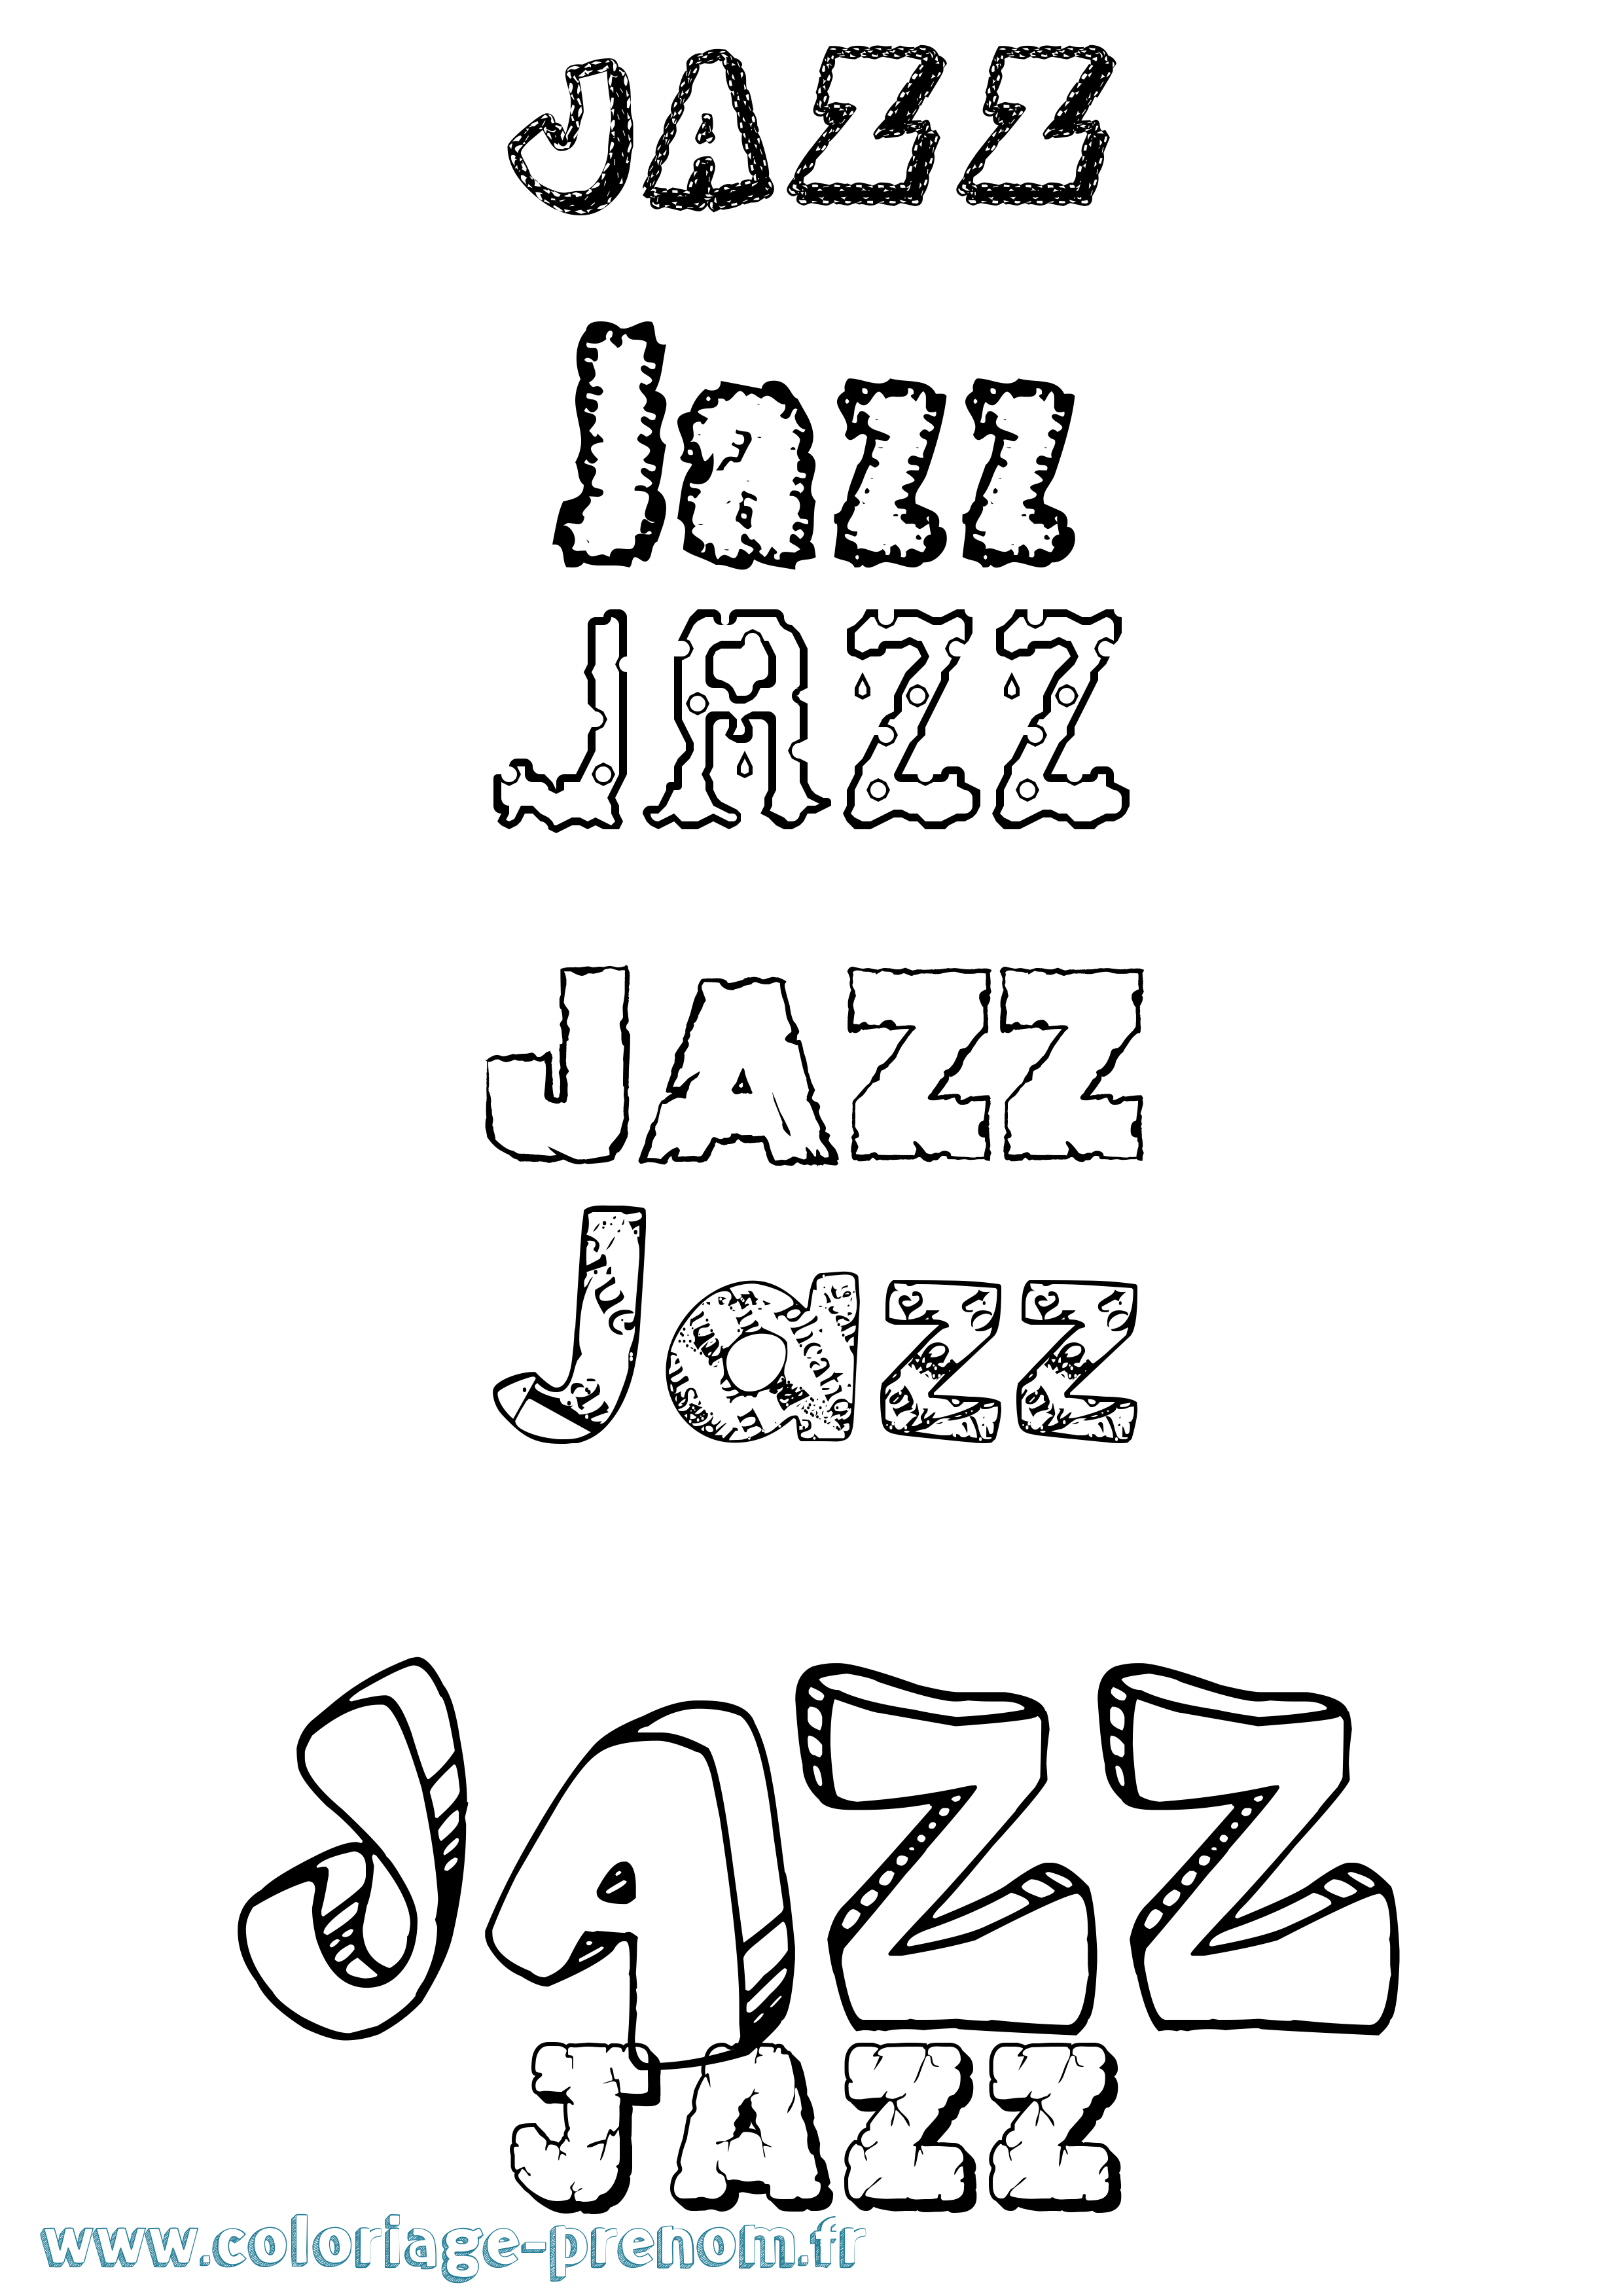 Coloriage prénom Jazz Destructuré